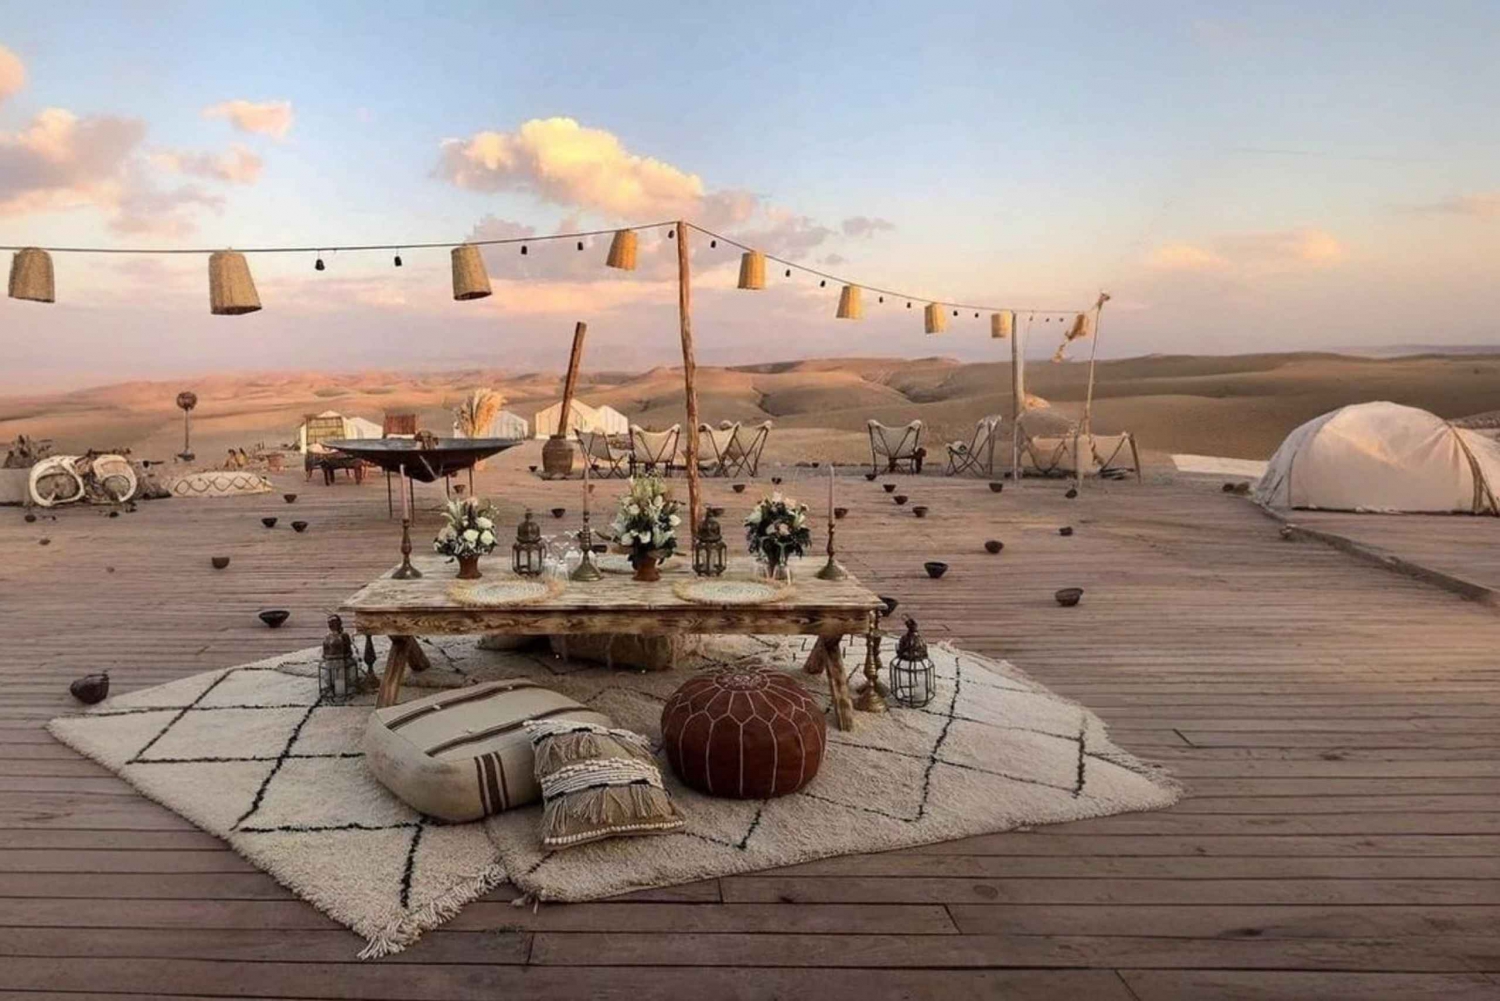 Marrakech: Agafayn autiomaassa: Kameliratsastus ja illallinen Agafayn autiomaassa